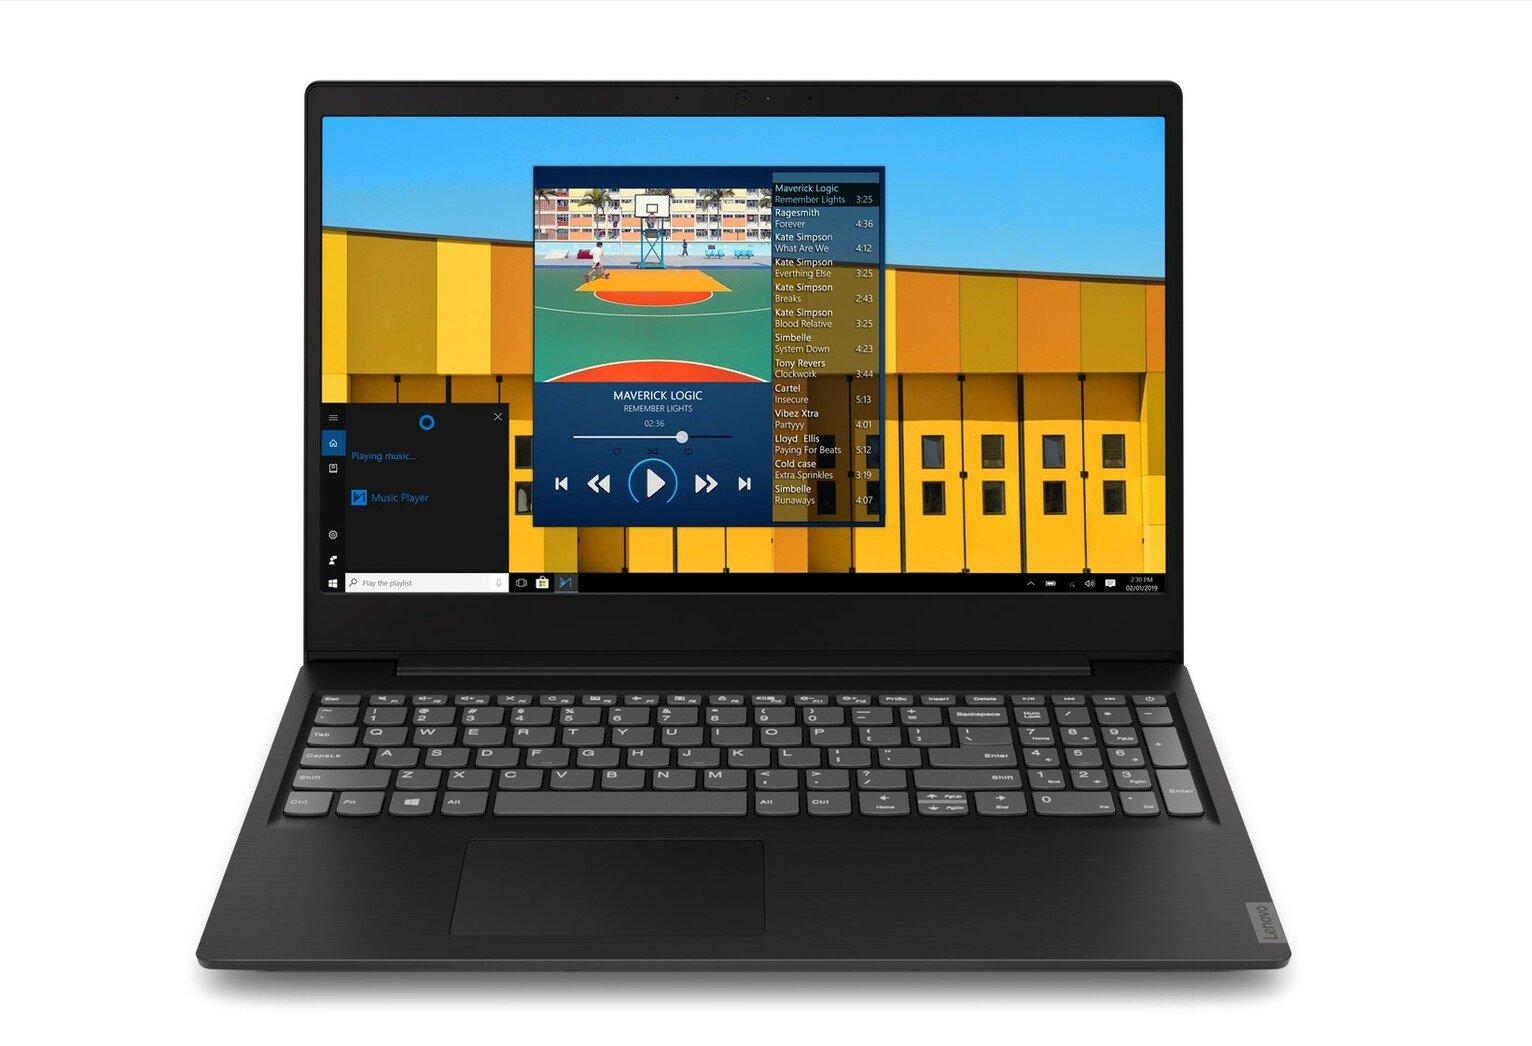 Lenovo IdeaPad S145 15.6in i7 8GB 256GB Laptop - Black